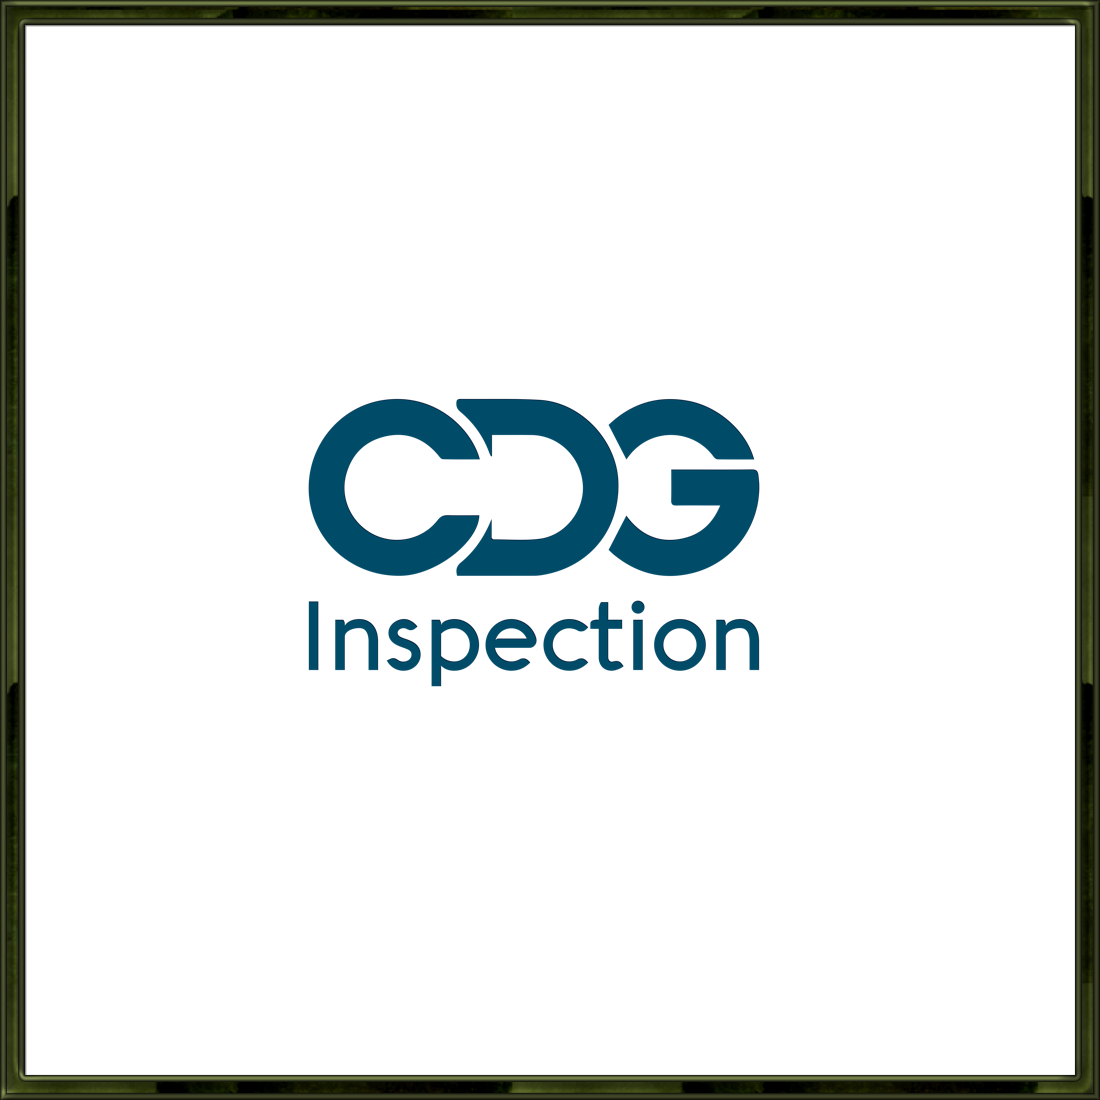 CDG logo